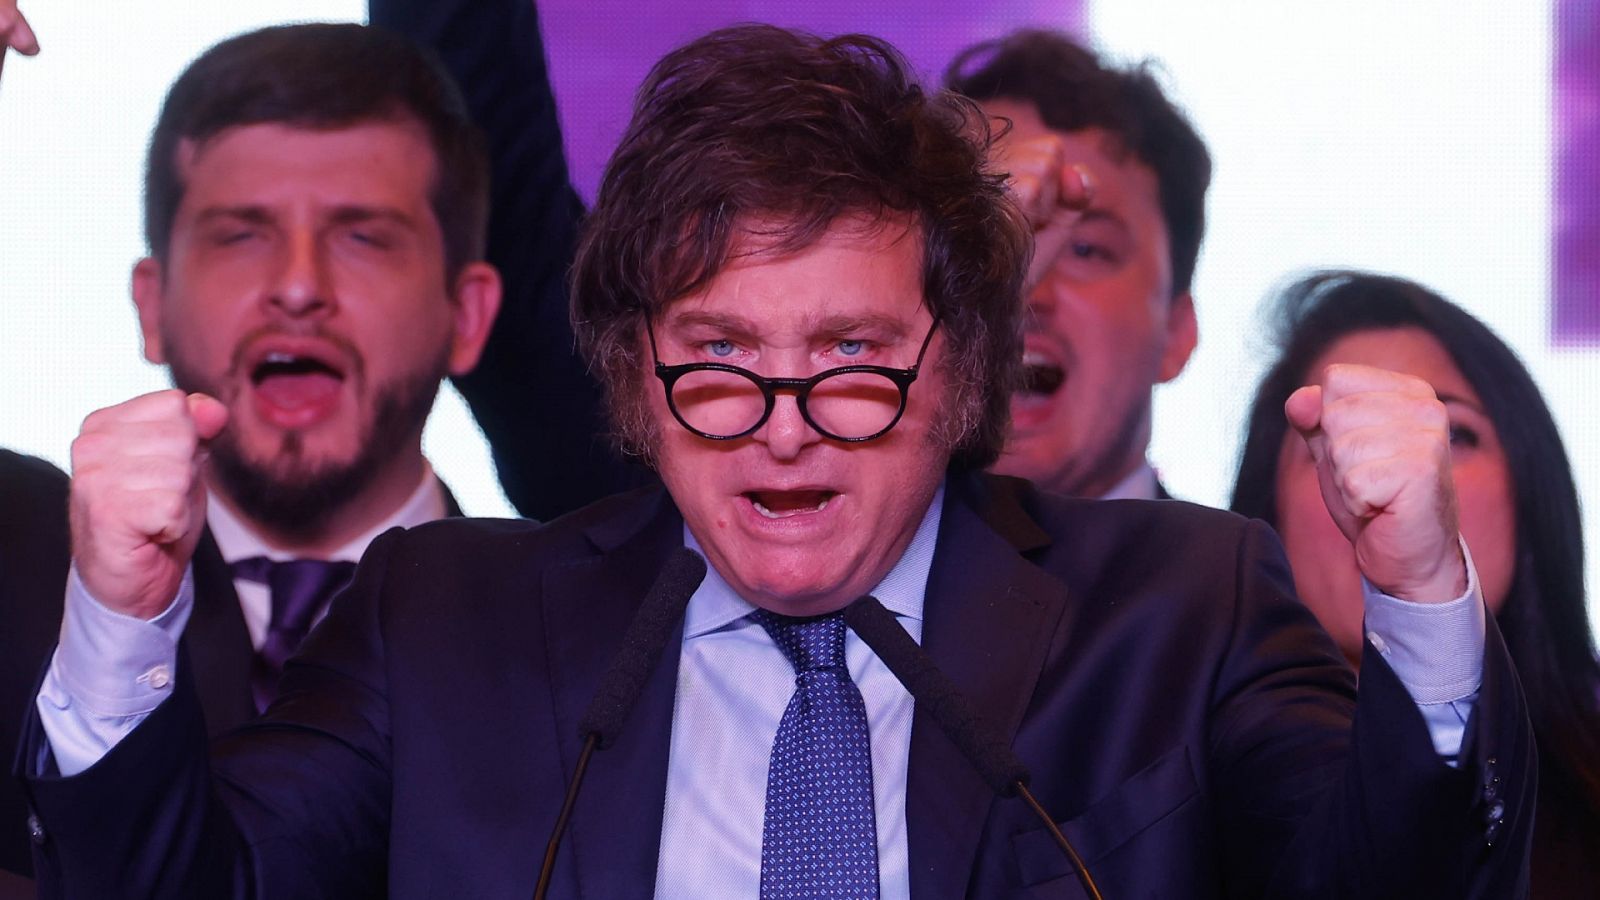 Elecciones ragentina 2023: los expertos señalan que "el discurso histriónico de Milei ha preocupado a la clase media"